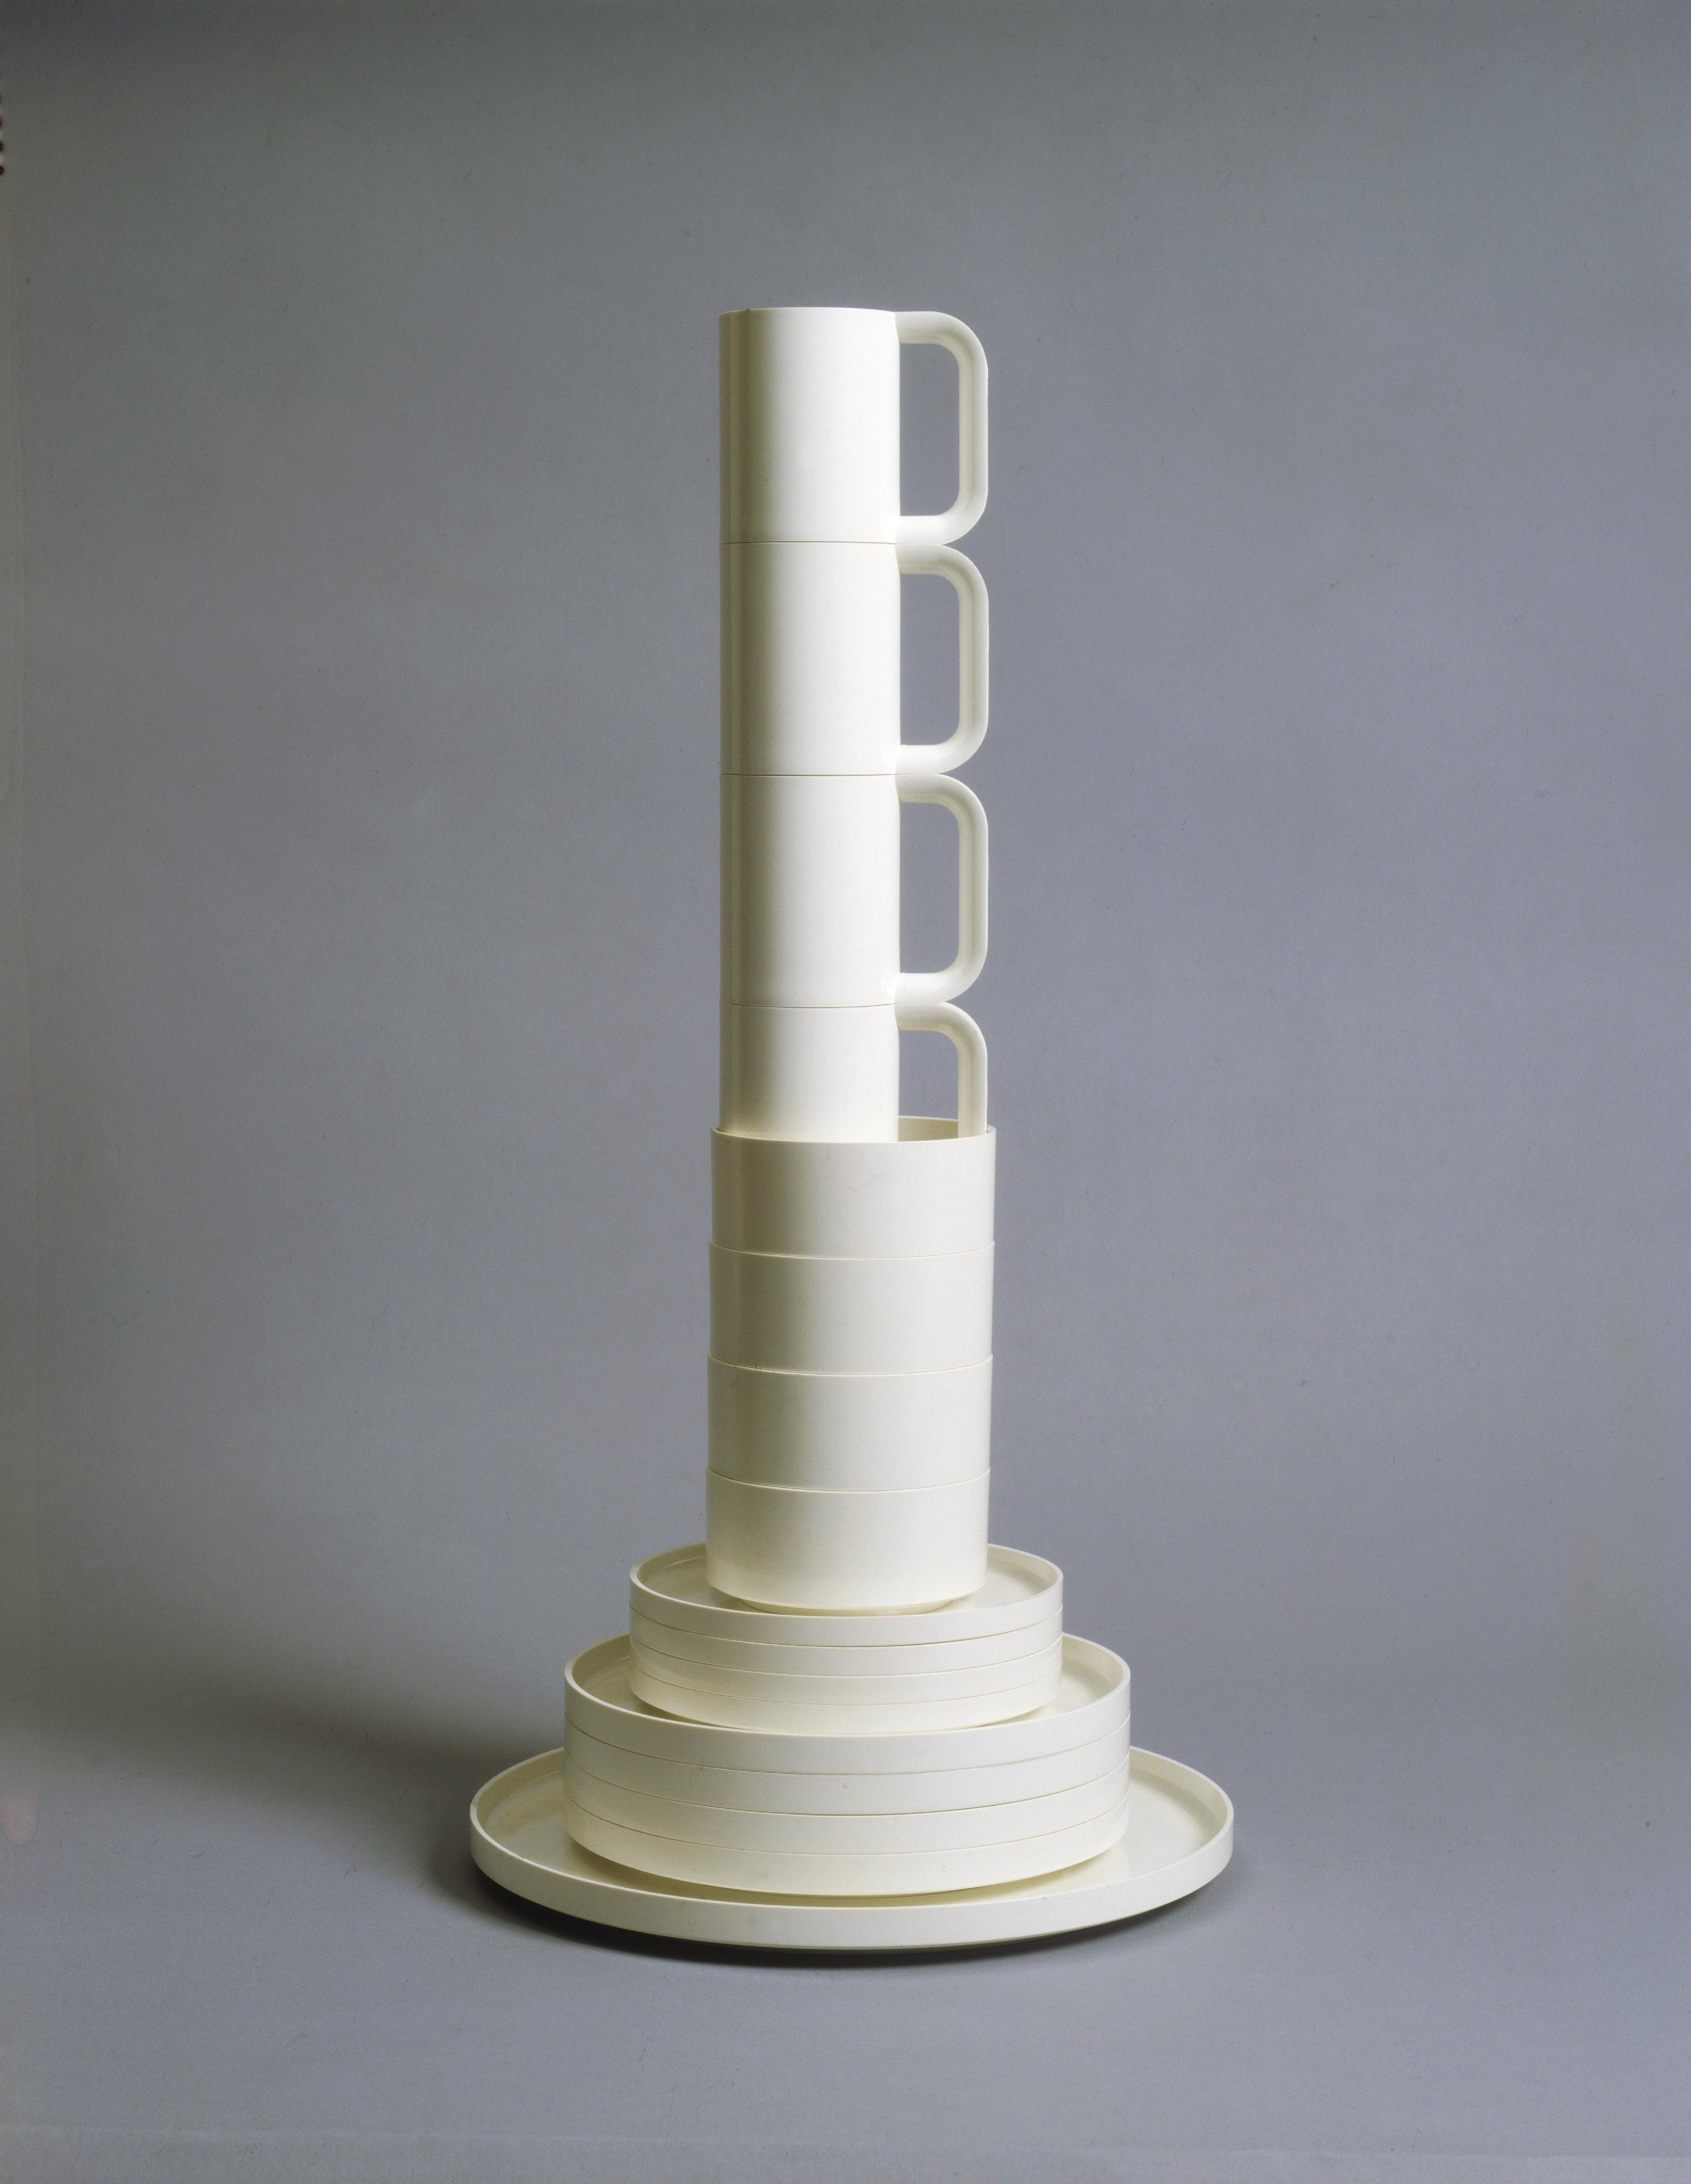 Stacking Dinnerware. Designed by Lella Vignelli and Massimo Vignelli. 1964. Manufacturer: Articoli Plastici Elettrici, Italy. Medium: Melamine resin